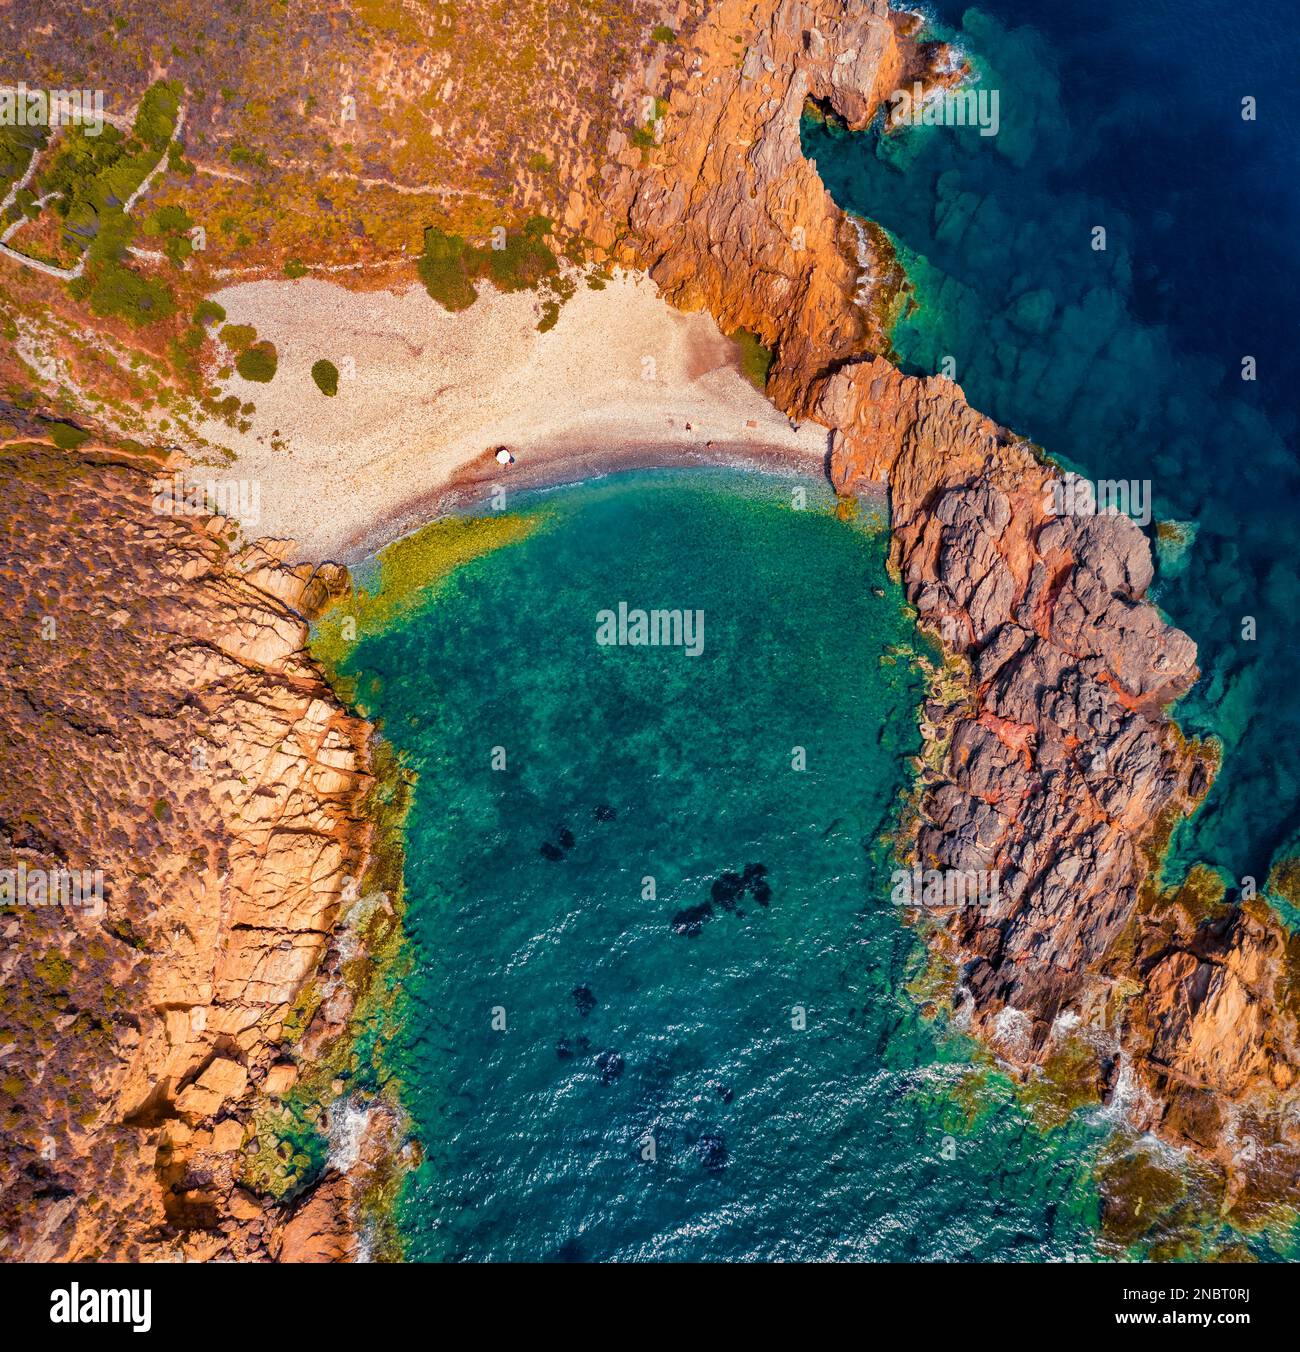 Vue directe depuis le drone volant de la plage d'Exo Kapi. Scène extérieure colorée de la péninsule du Péloponnèse, Grèce, Europe. Depp bleu mer Méditerranée. Banque D'Images